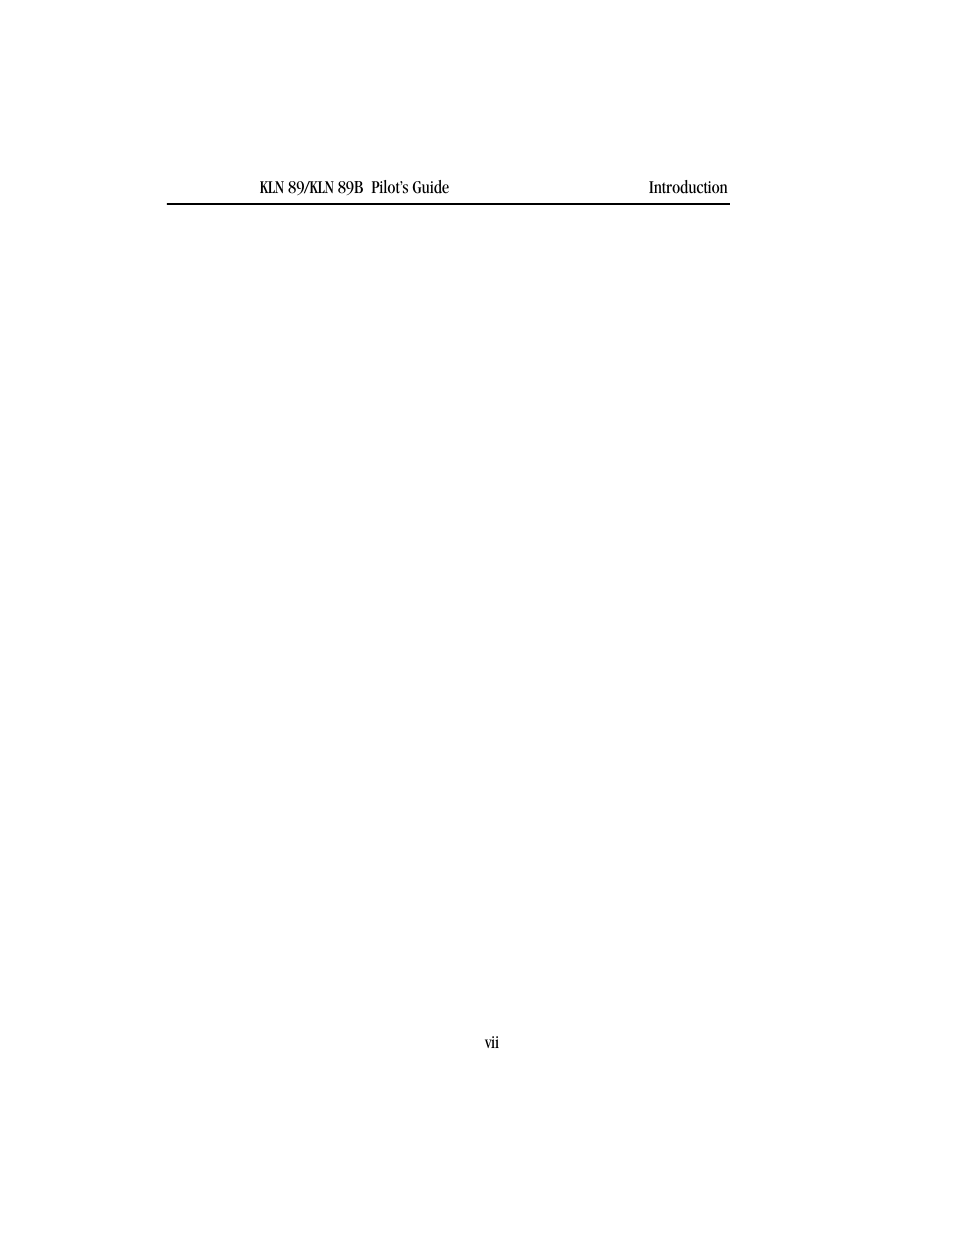 BendixKing KLN 89B - Pilots Guide User Manual | Page 21 / 246